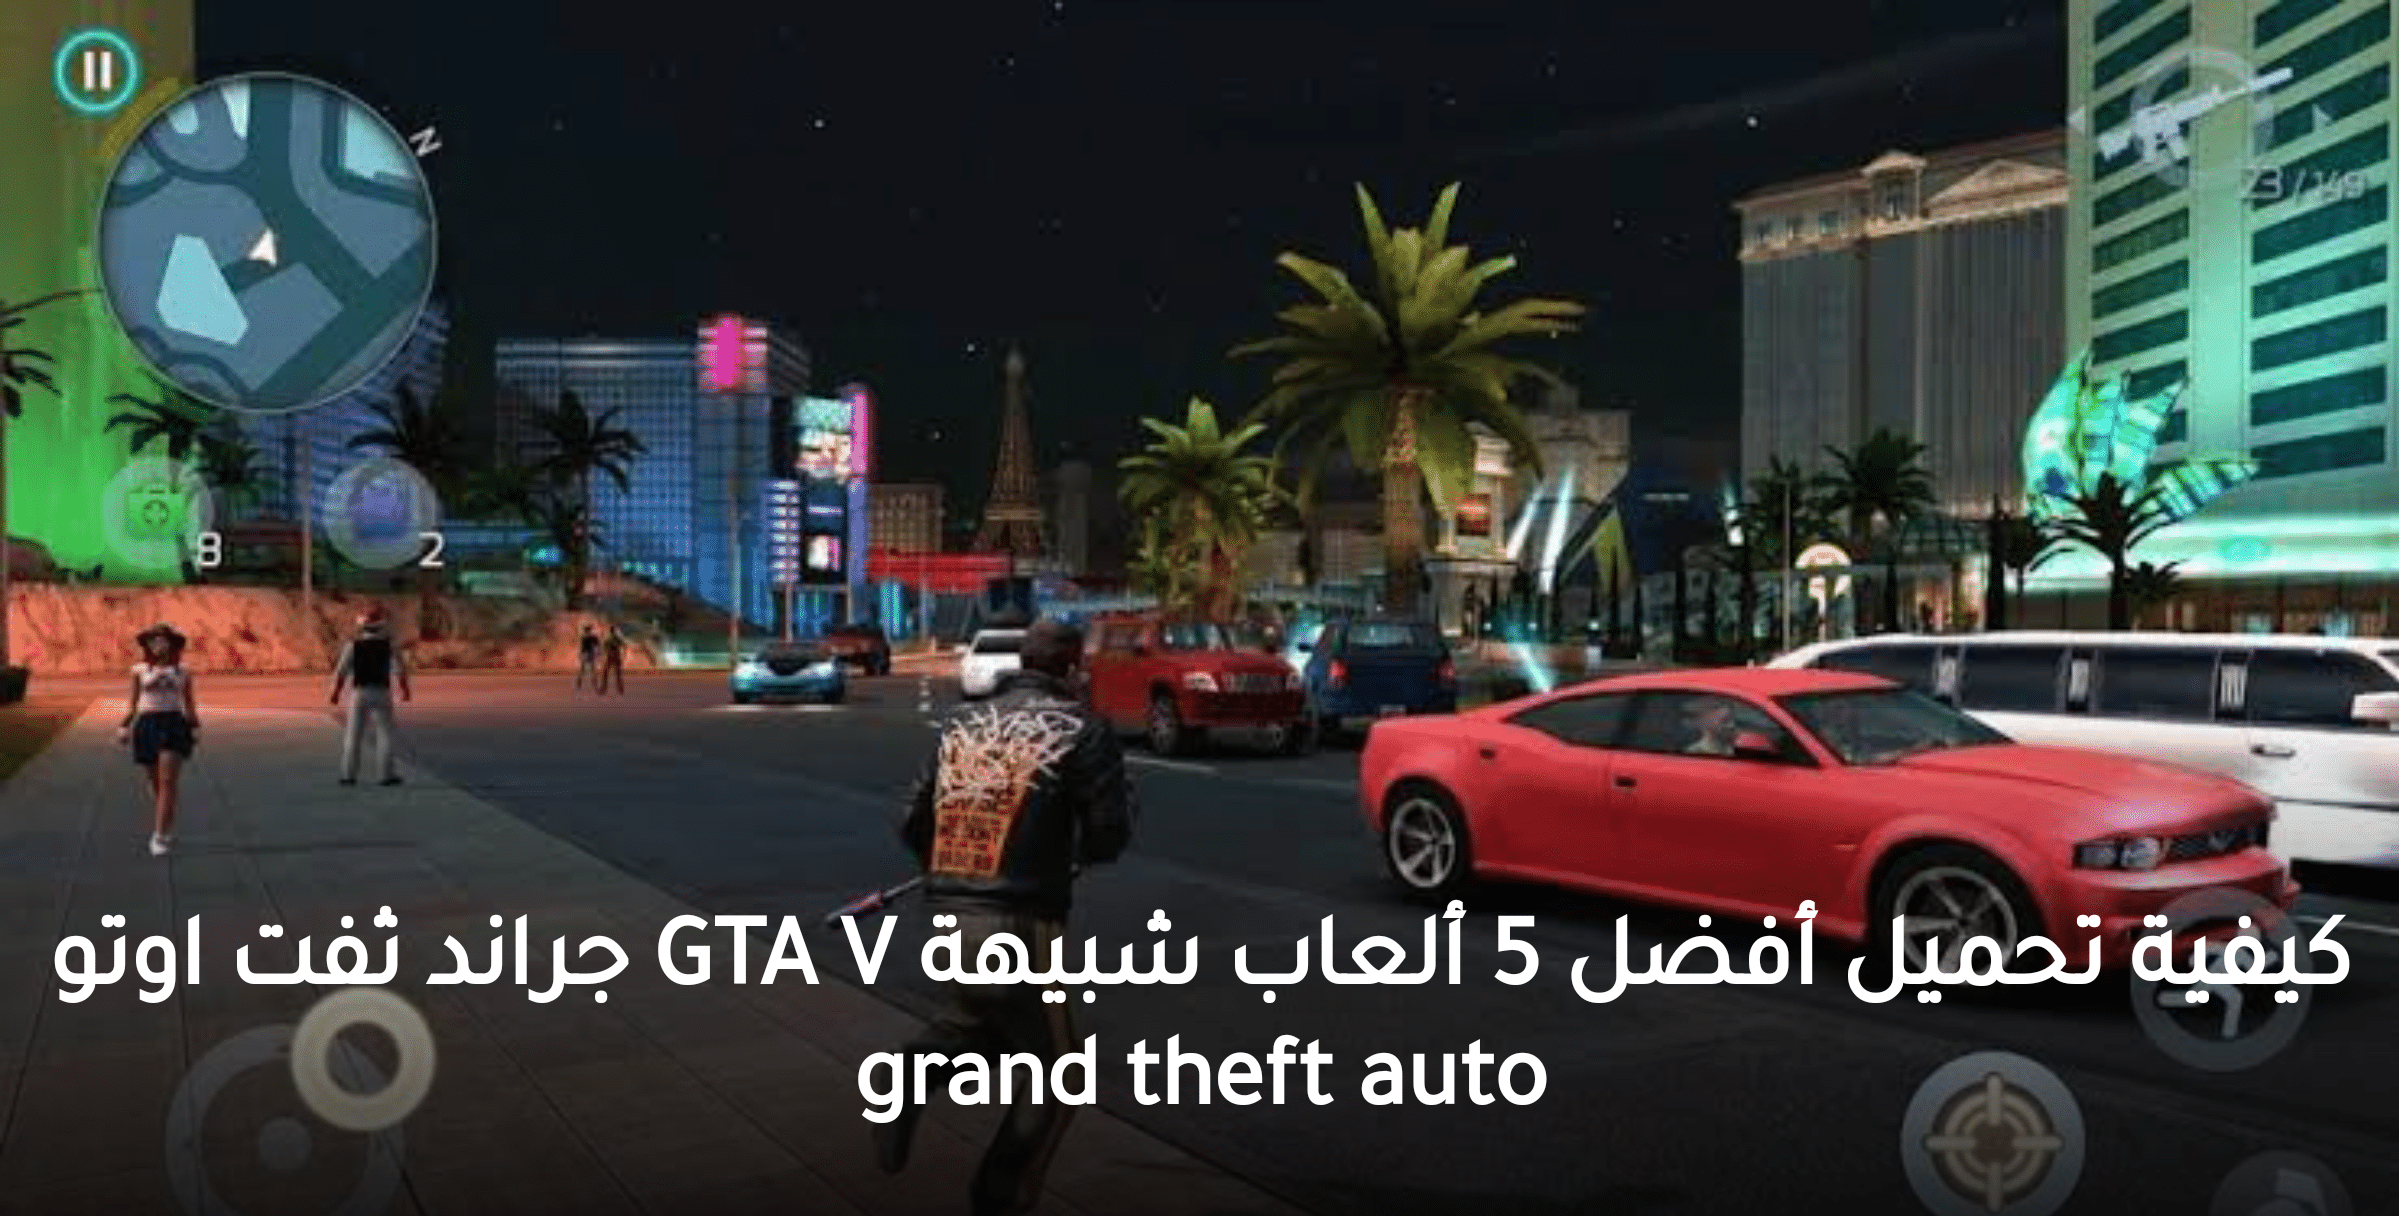 كيفية تحميل أفضل 5 ألعاب شبيهة GTA V جراند ثفت اوتو grand theft auto بحجم صغير